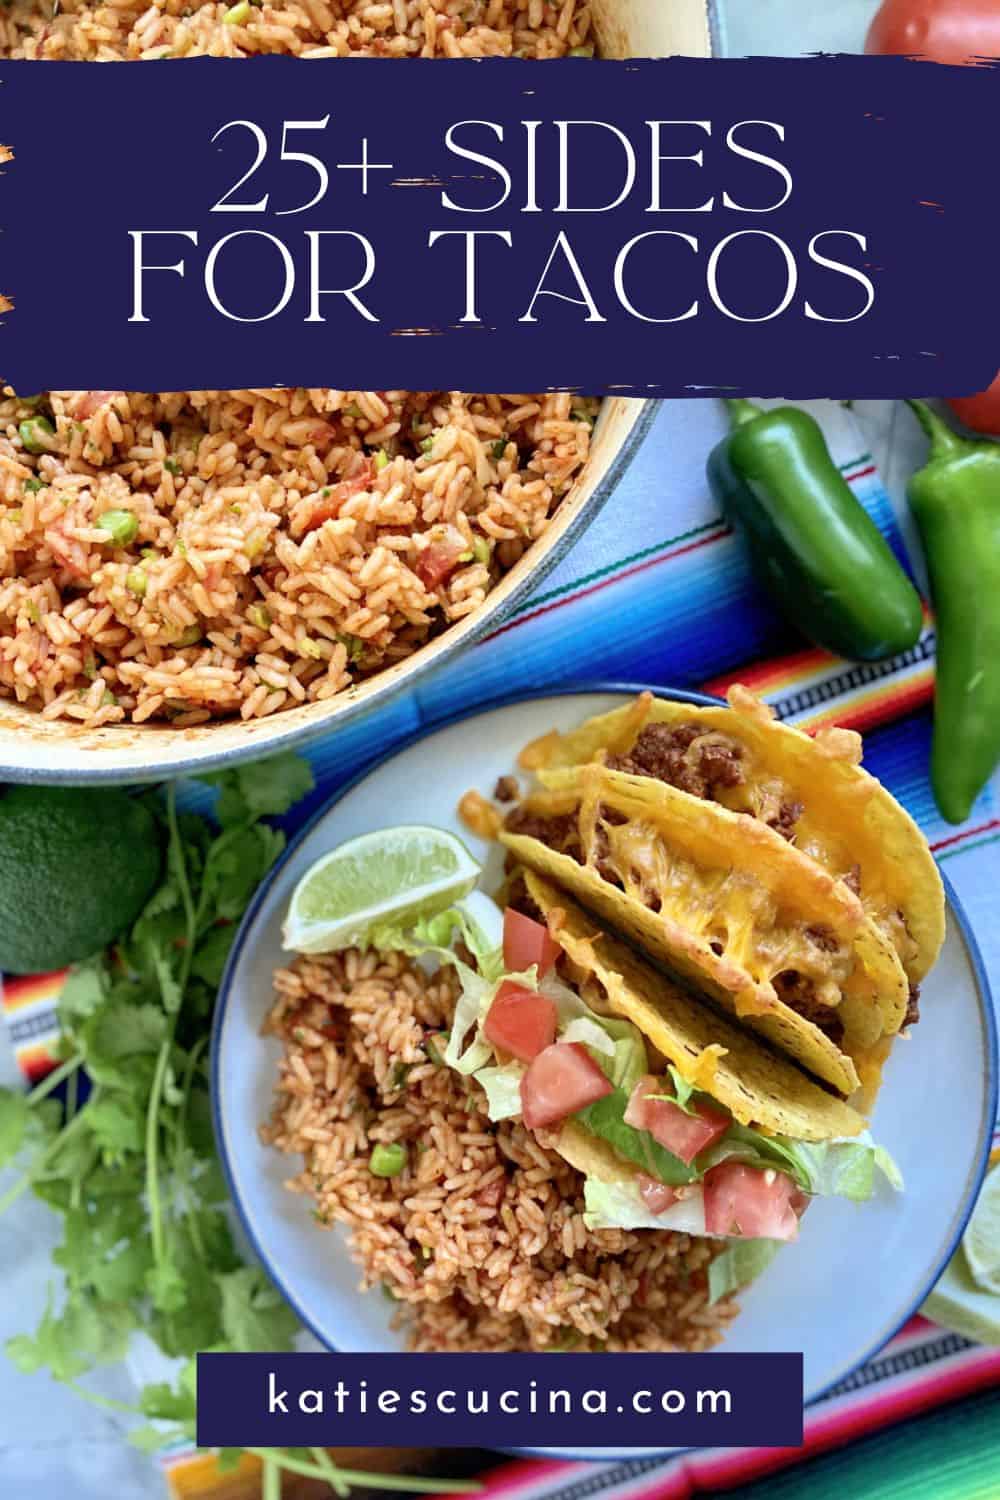 70 Taco Recipes